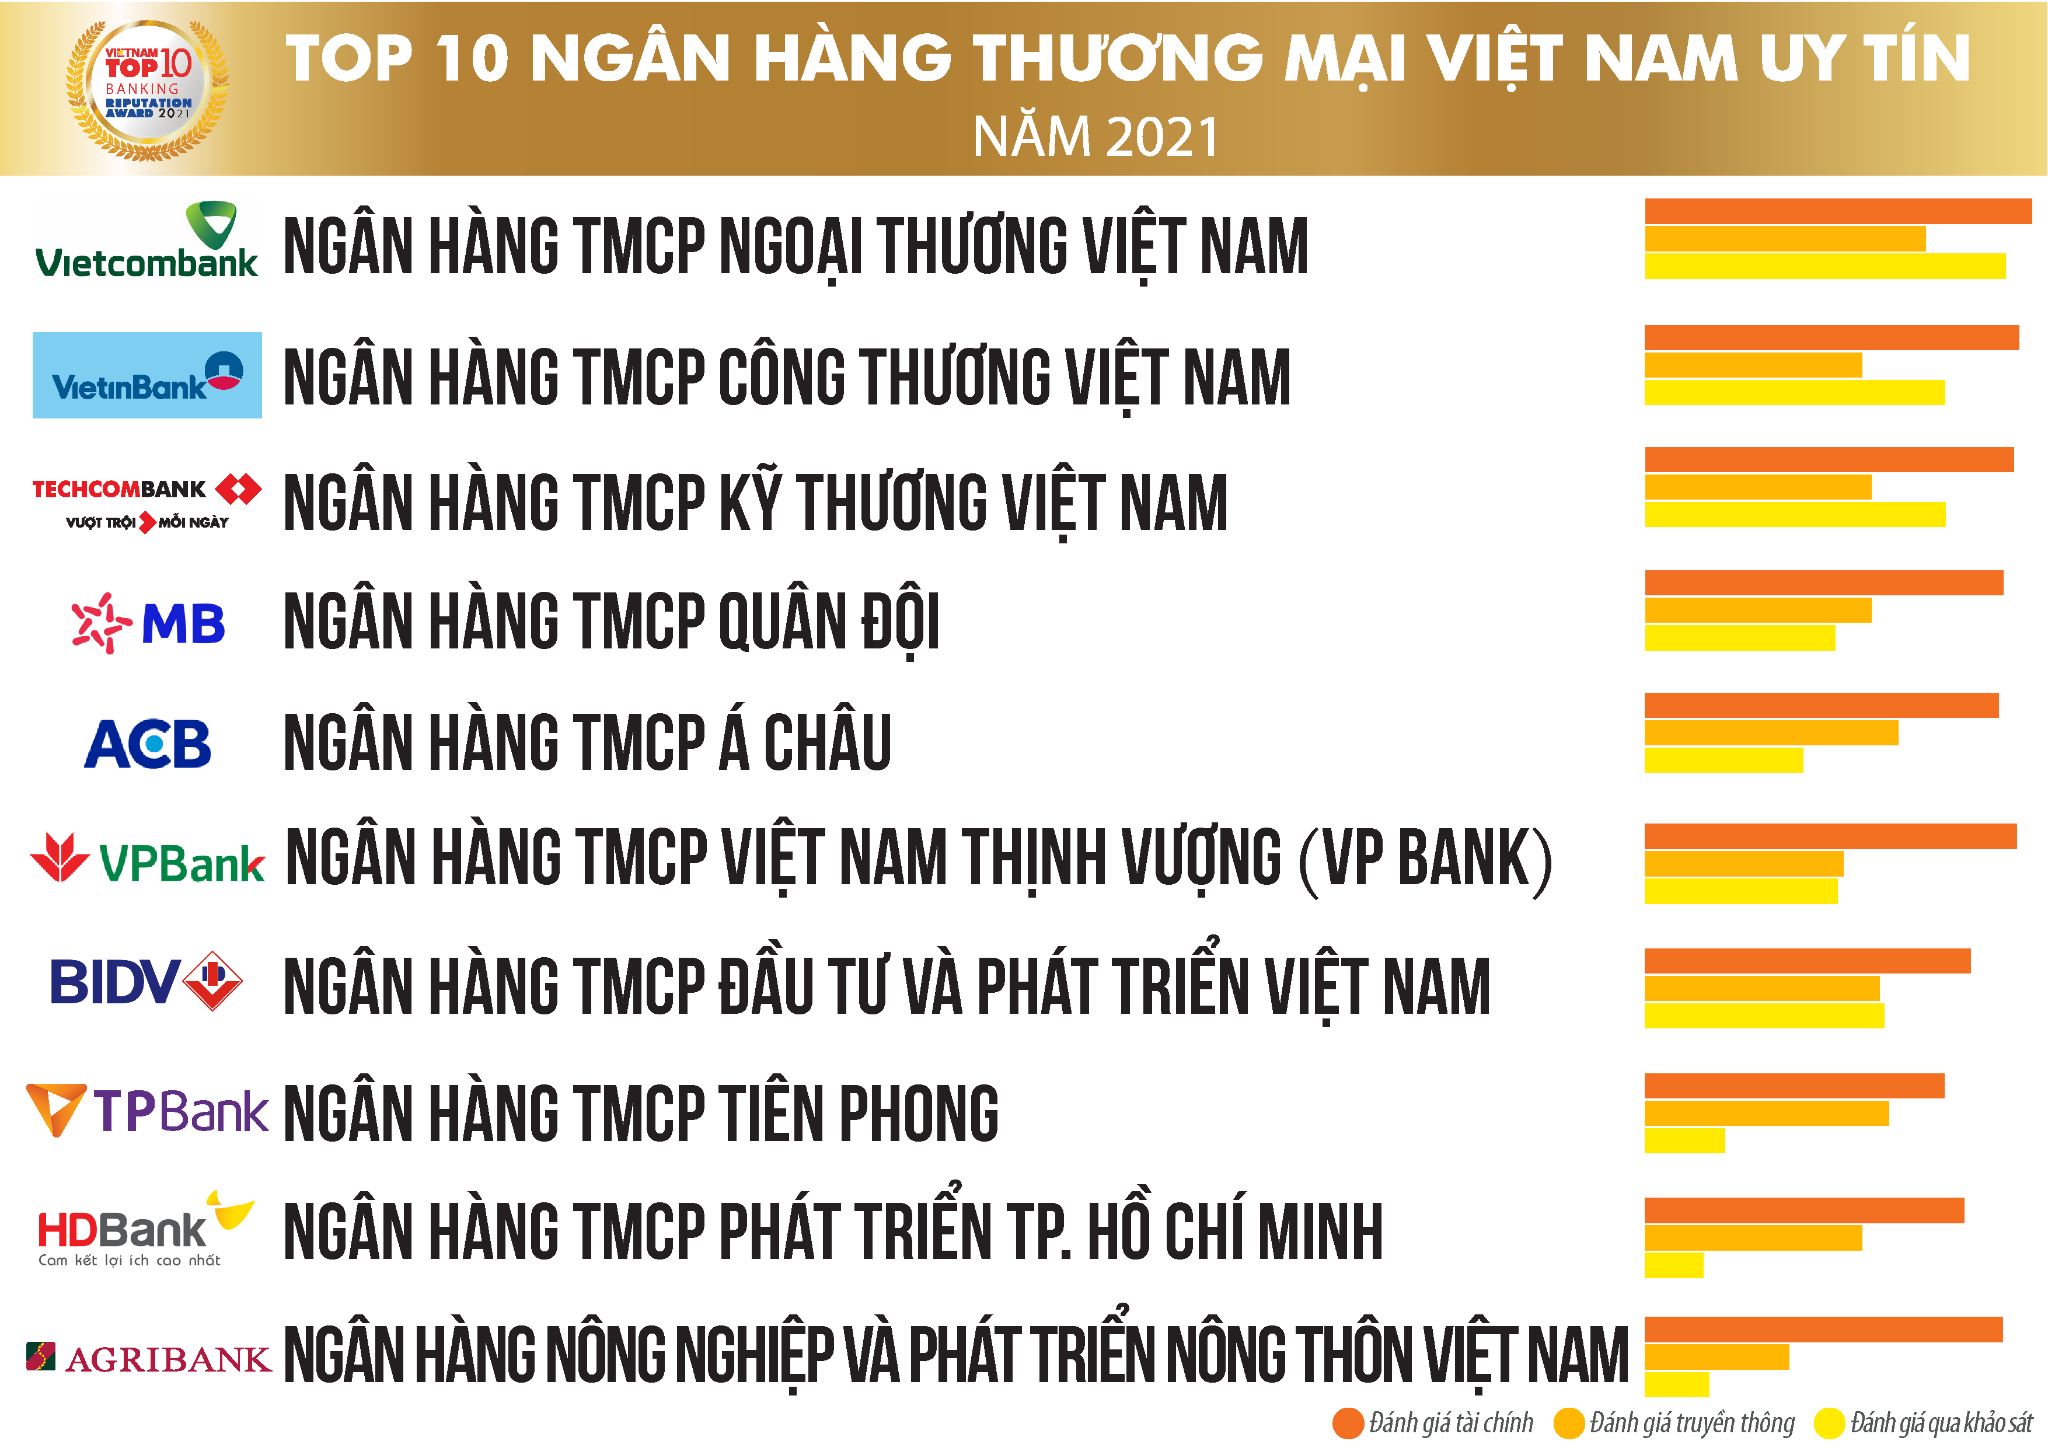 Top 10 Ngân hàng thương mại Việt Nam uy tín năm 2021, tháng 7/2021 - Ảnh: Vietnam Report